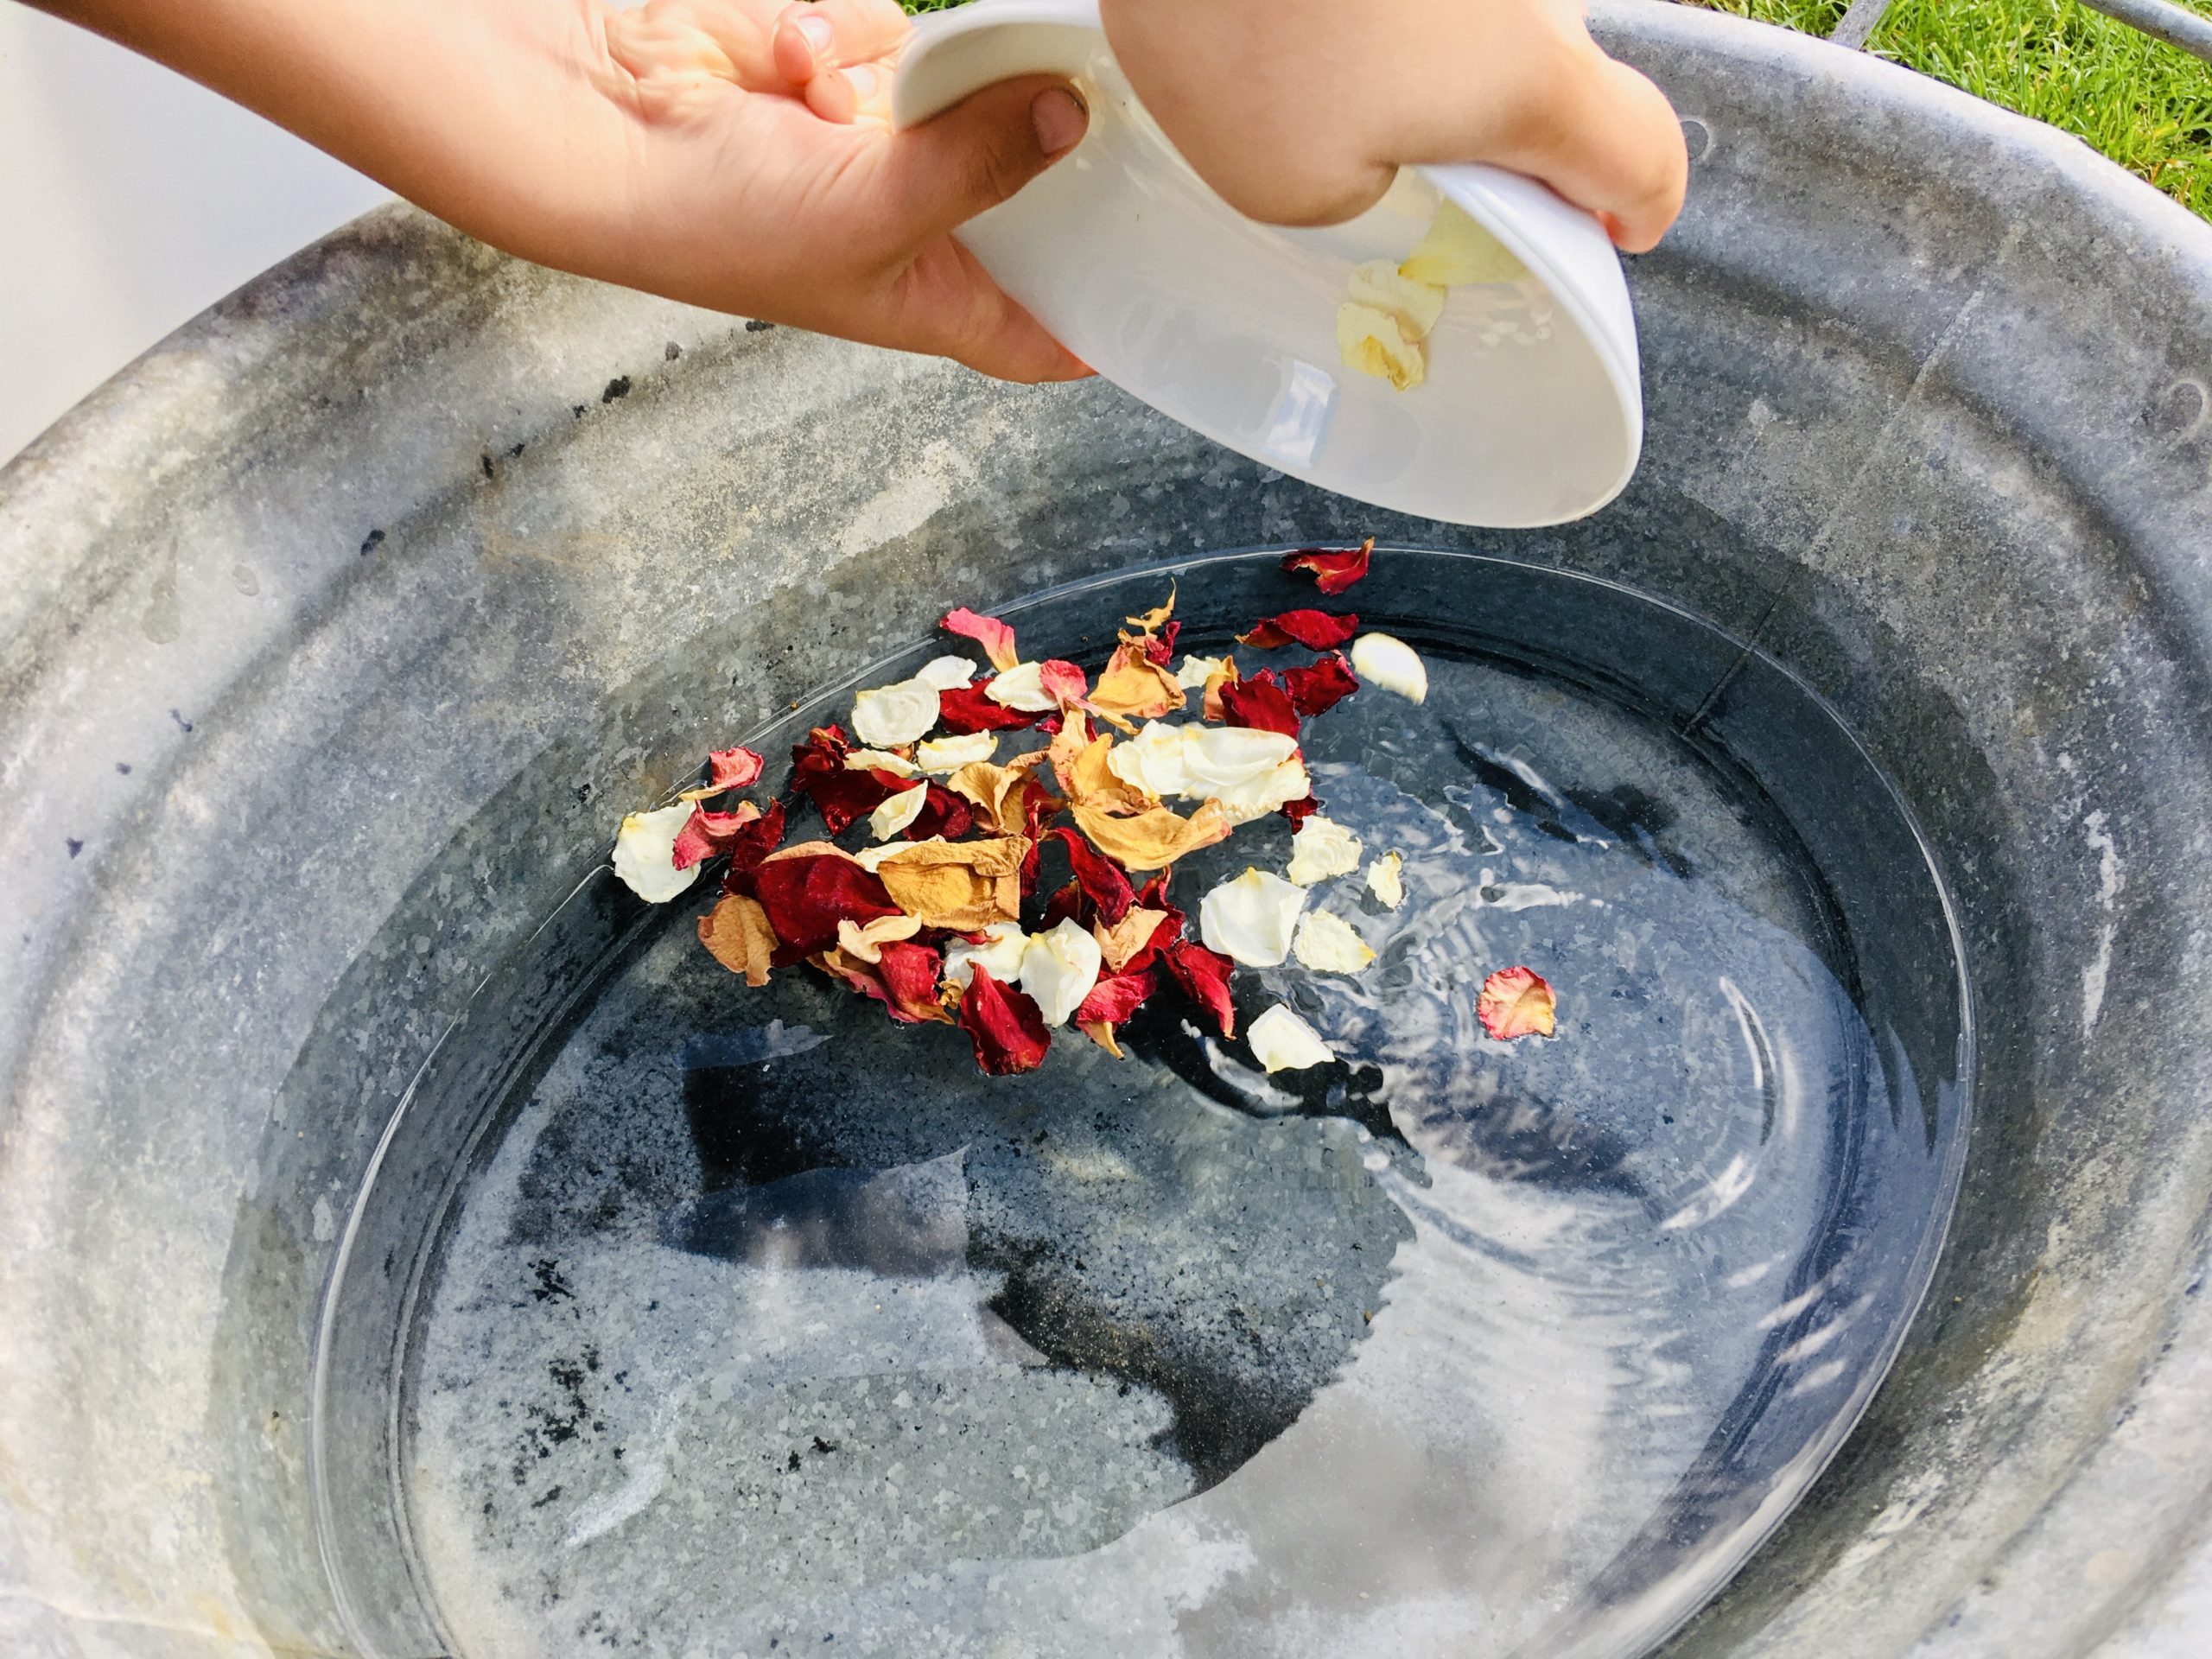 Bild zum Schritt 2 für das Bastel- und DIY-Abenteuer für Kinder: 'Die Rosenblüten in das warme Wasser schütten und dann die...'